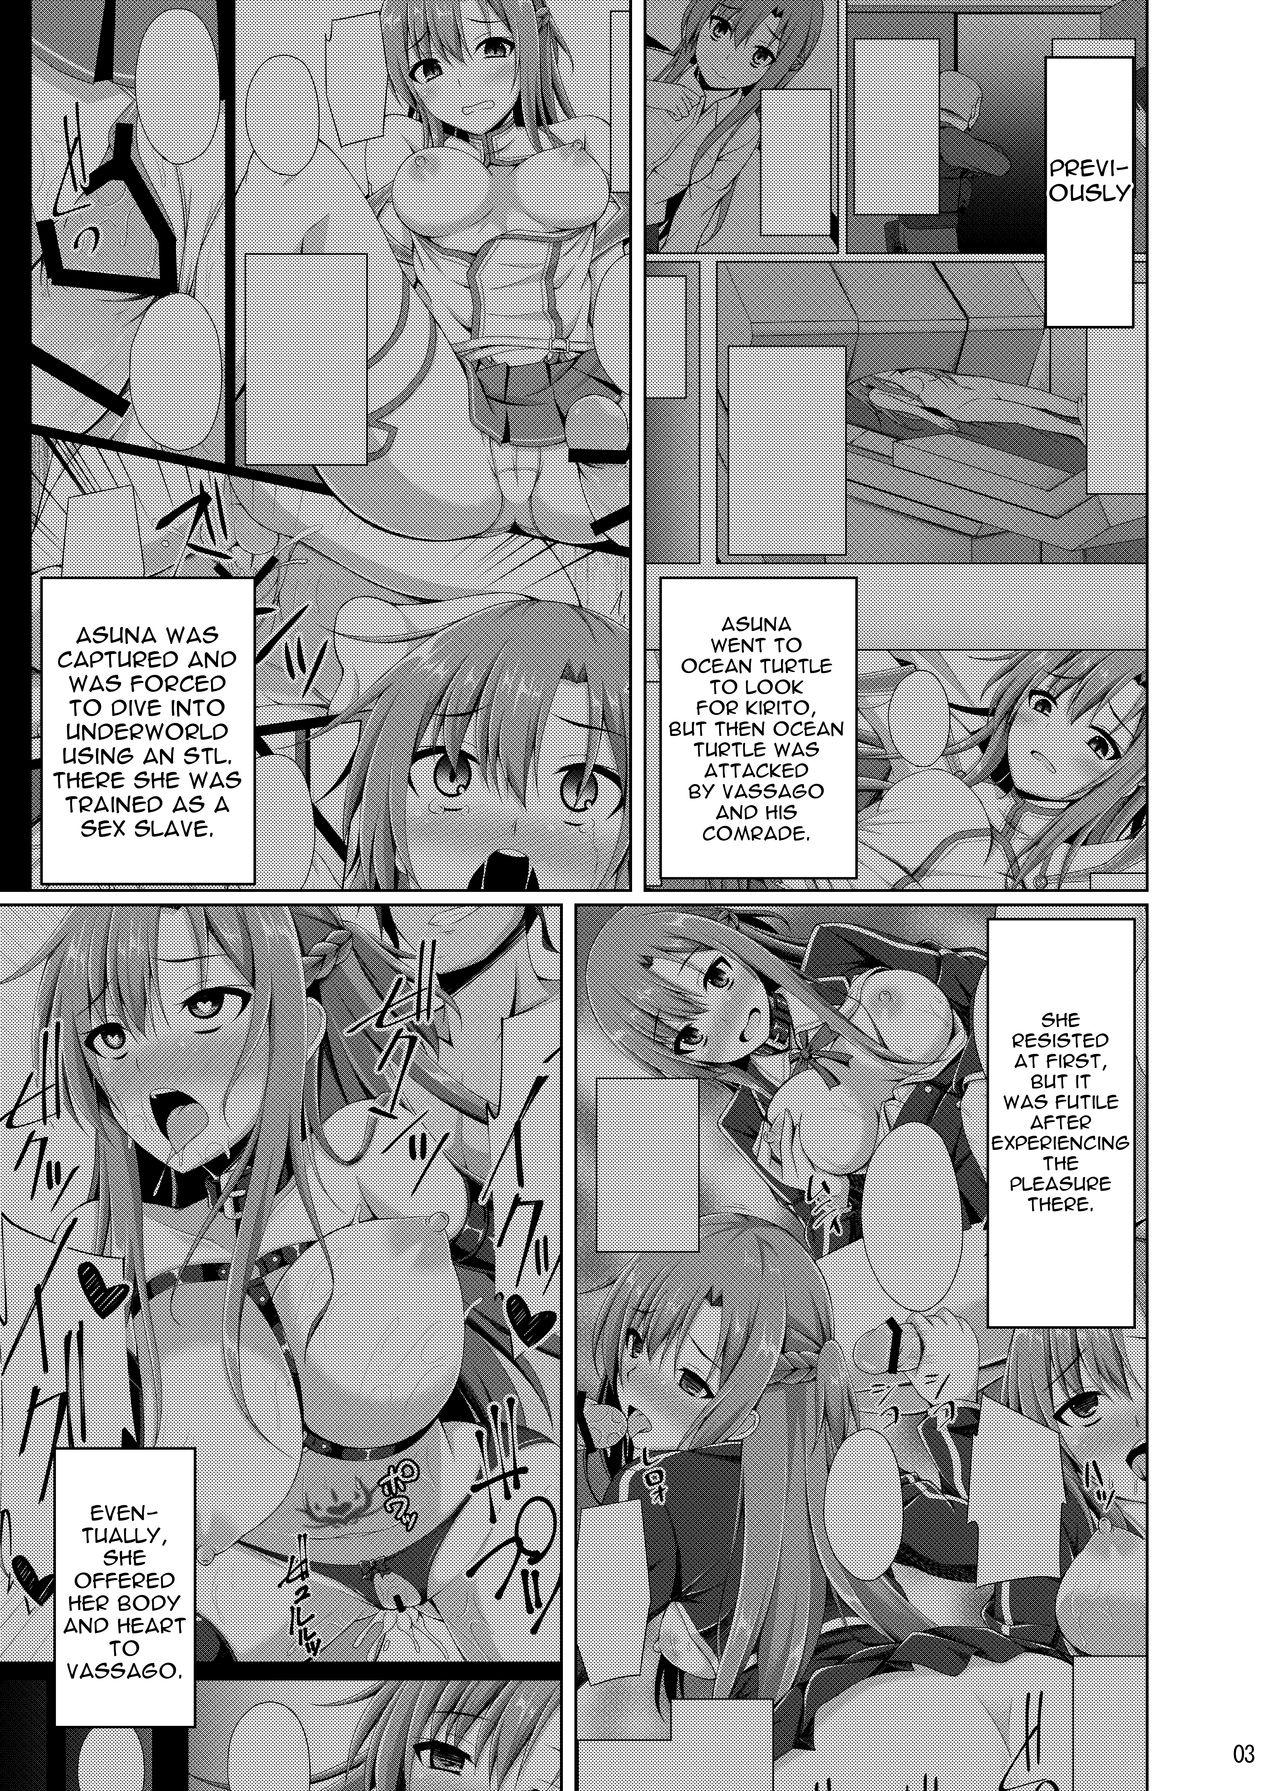 Blowjob Kanojo wa Mou "Onii-chan" to wa Yonde Kurenai... - Sword art online Transsexual - Page 2